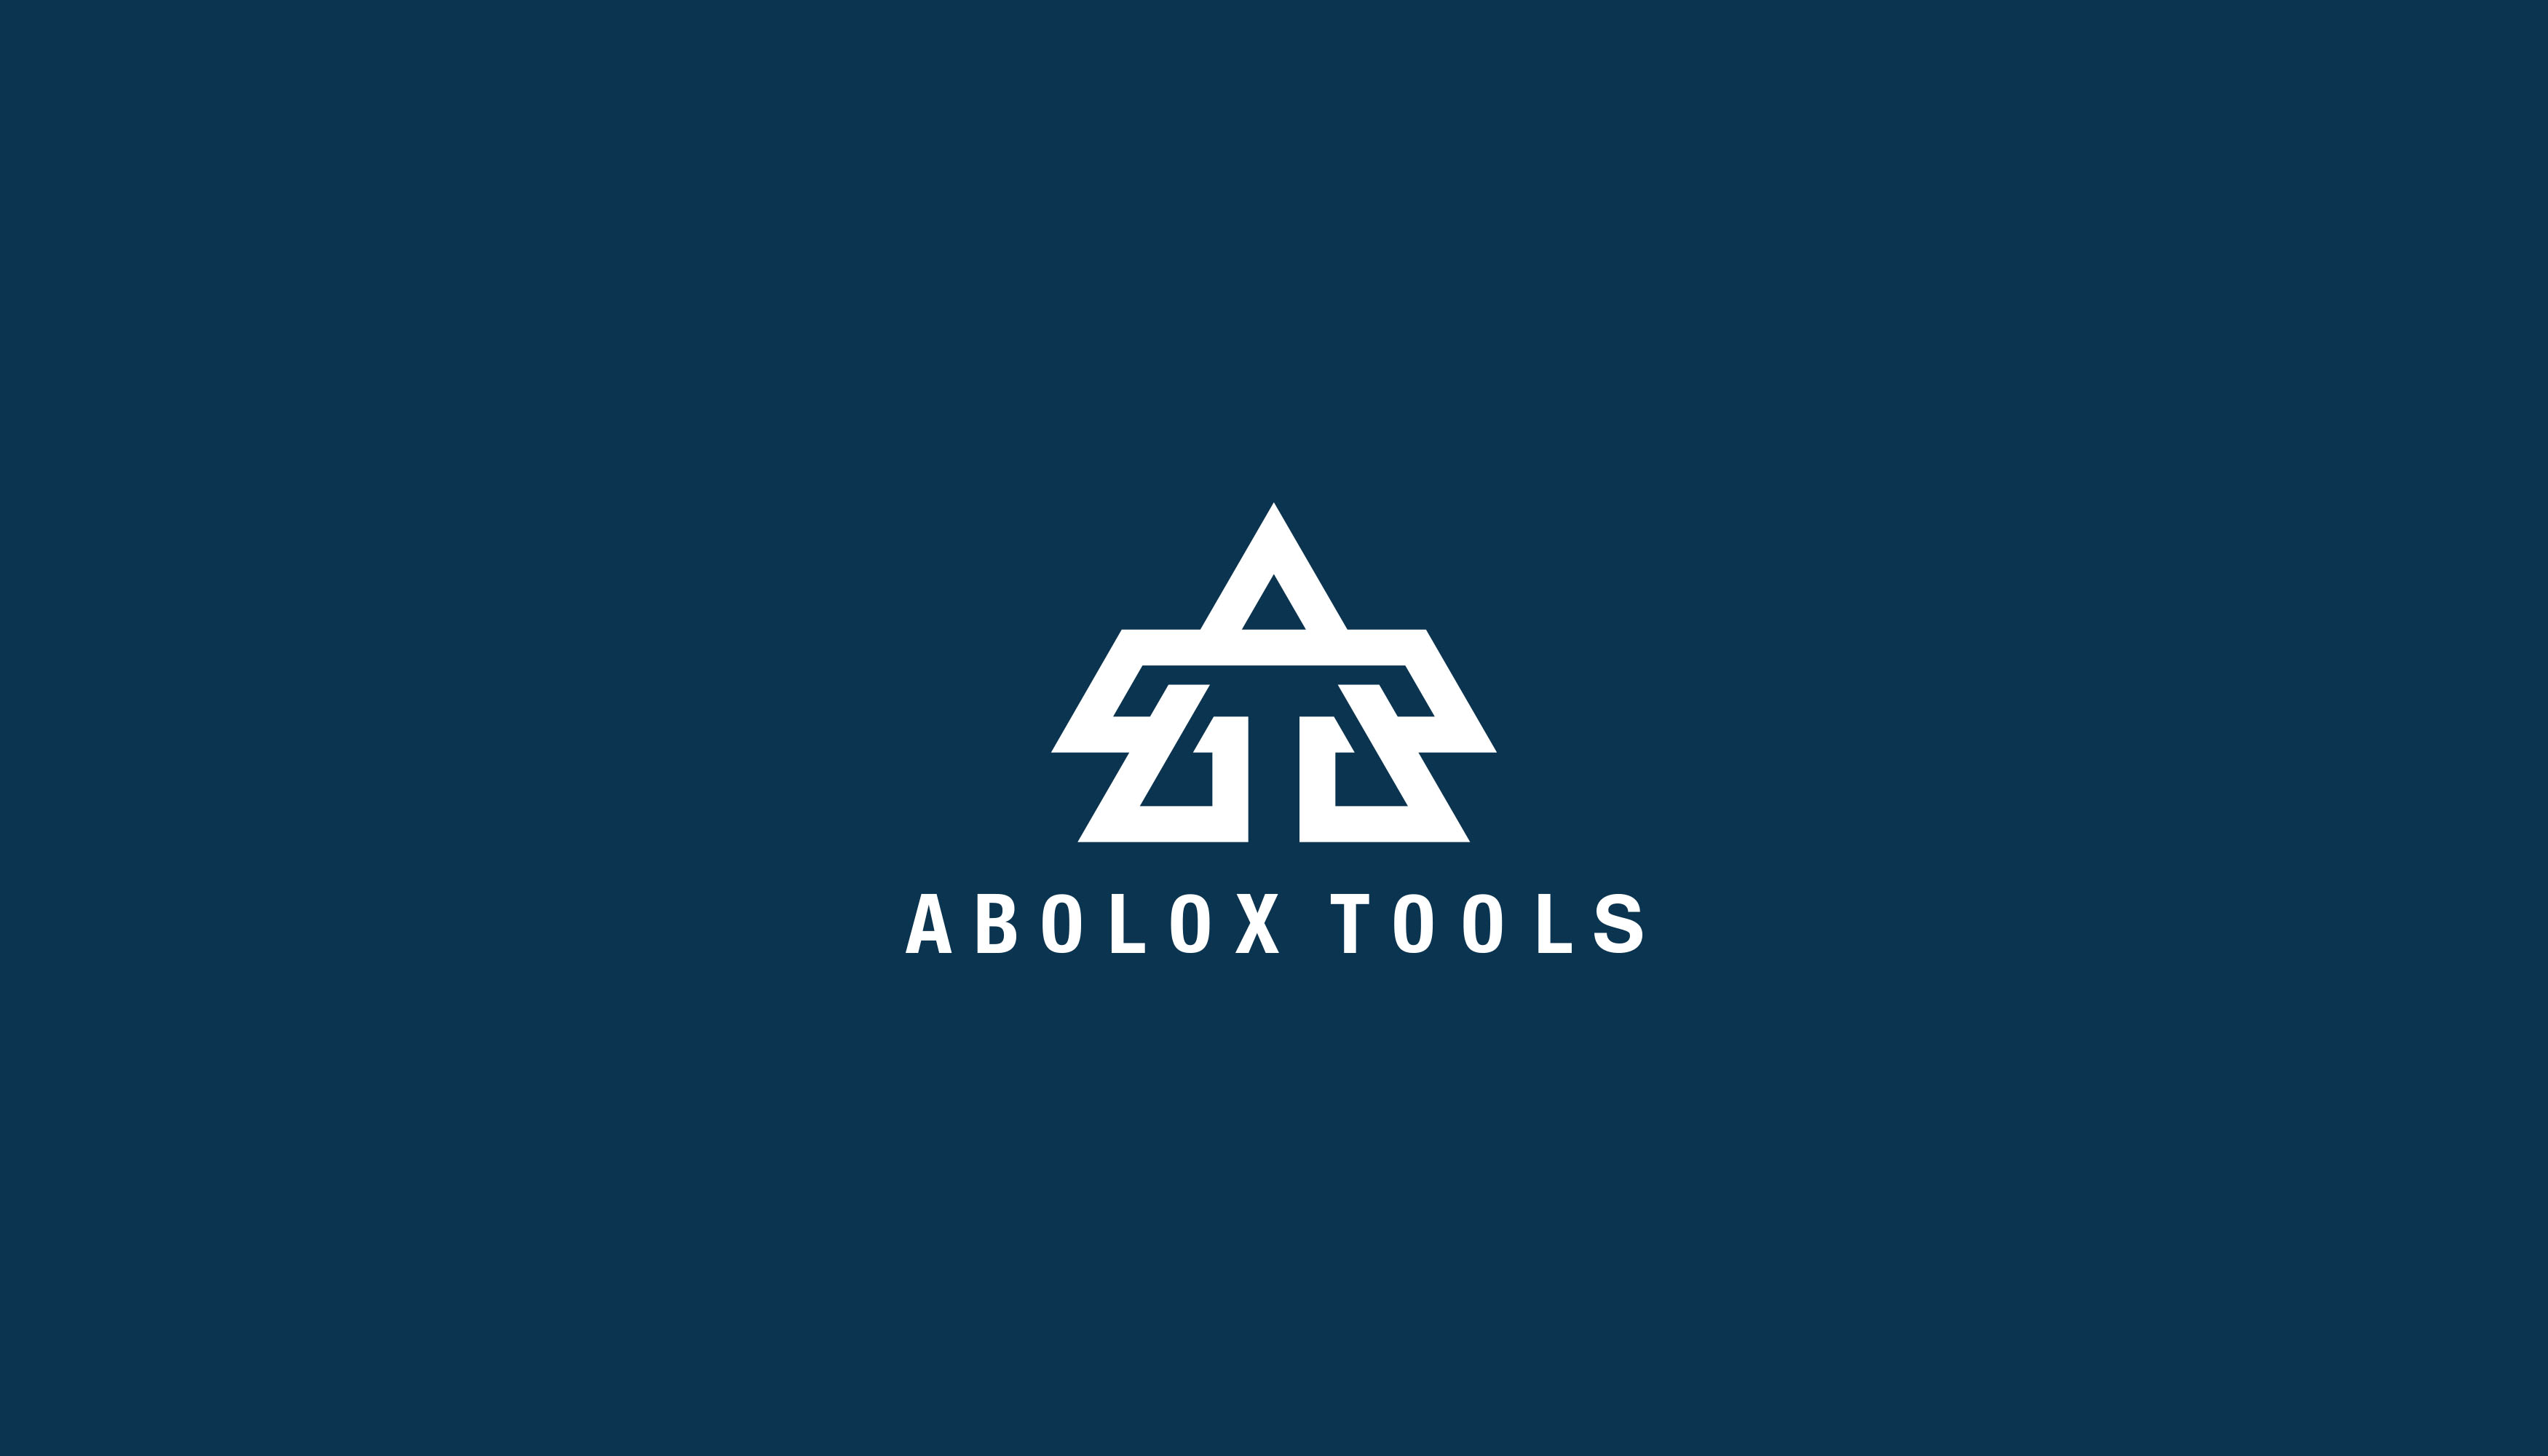 Abolox Tools Design #3